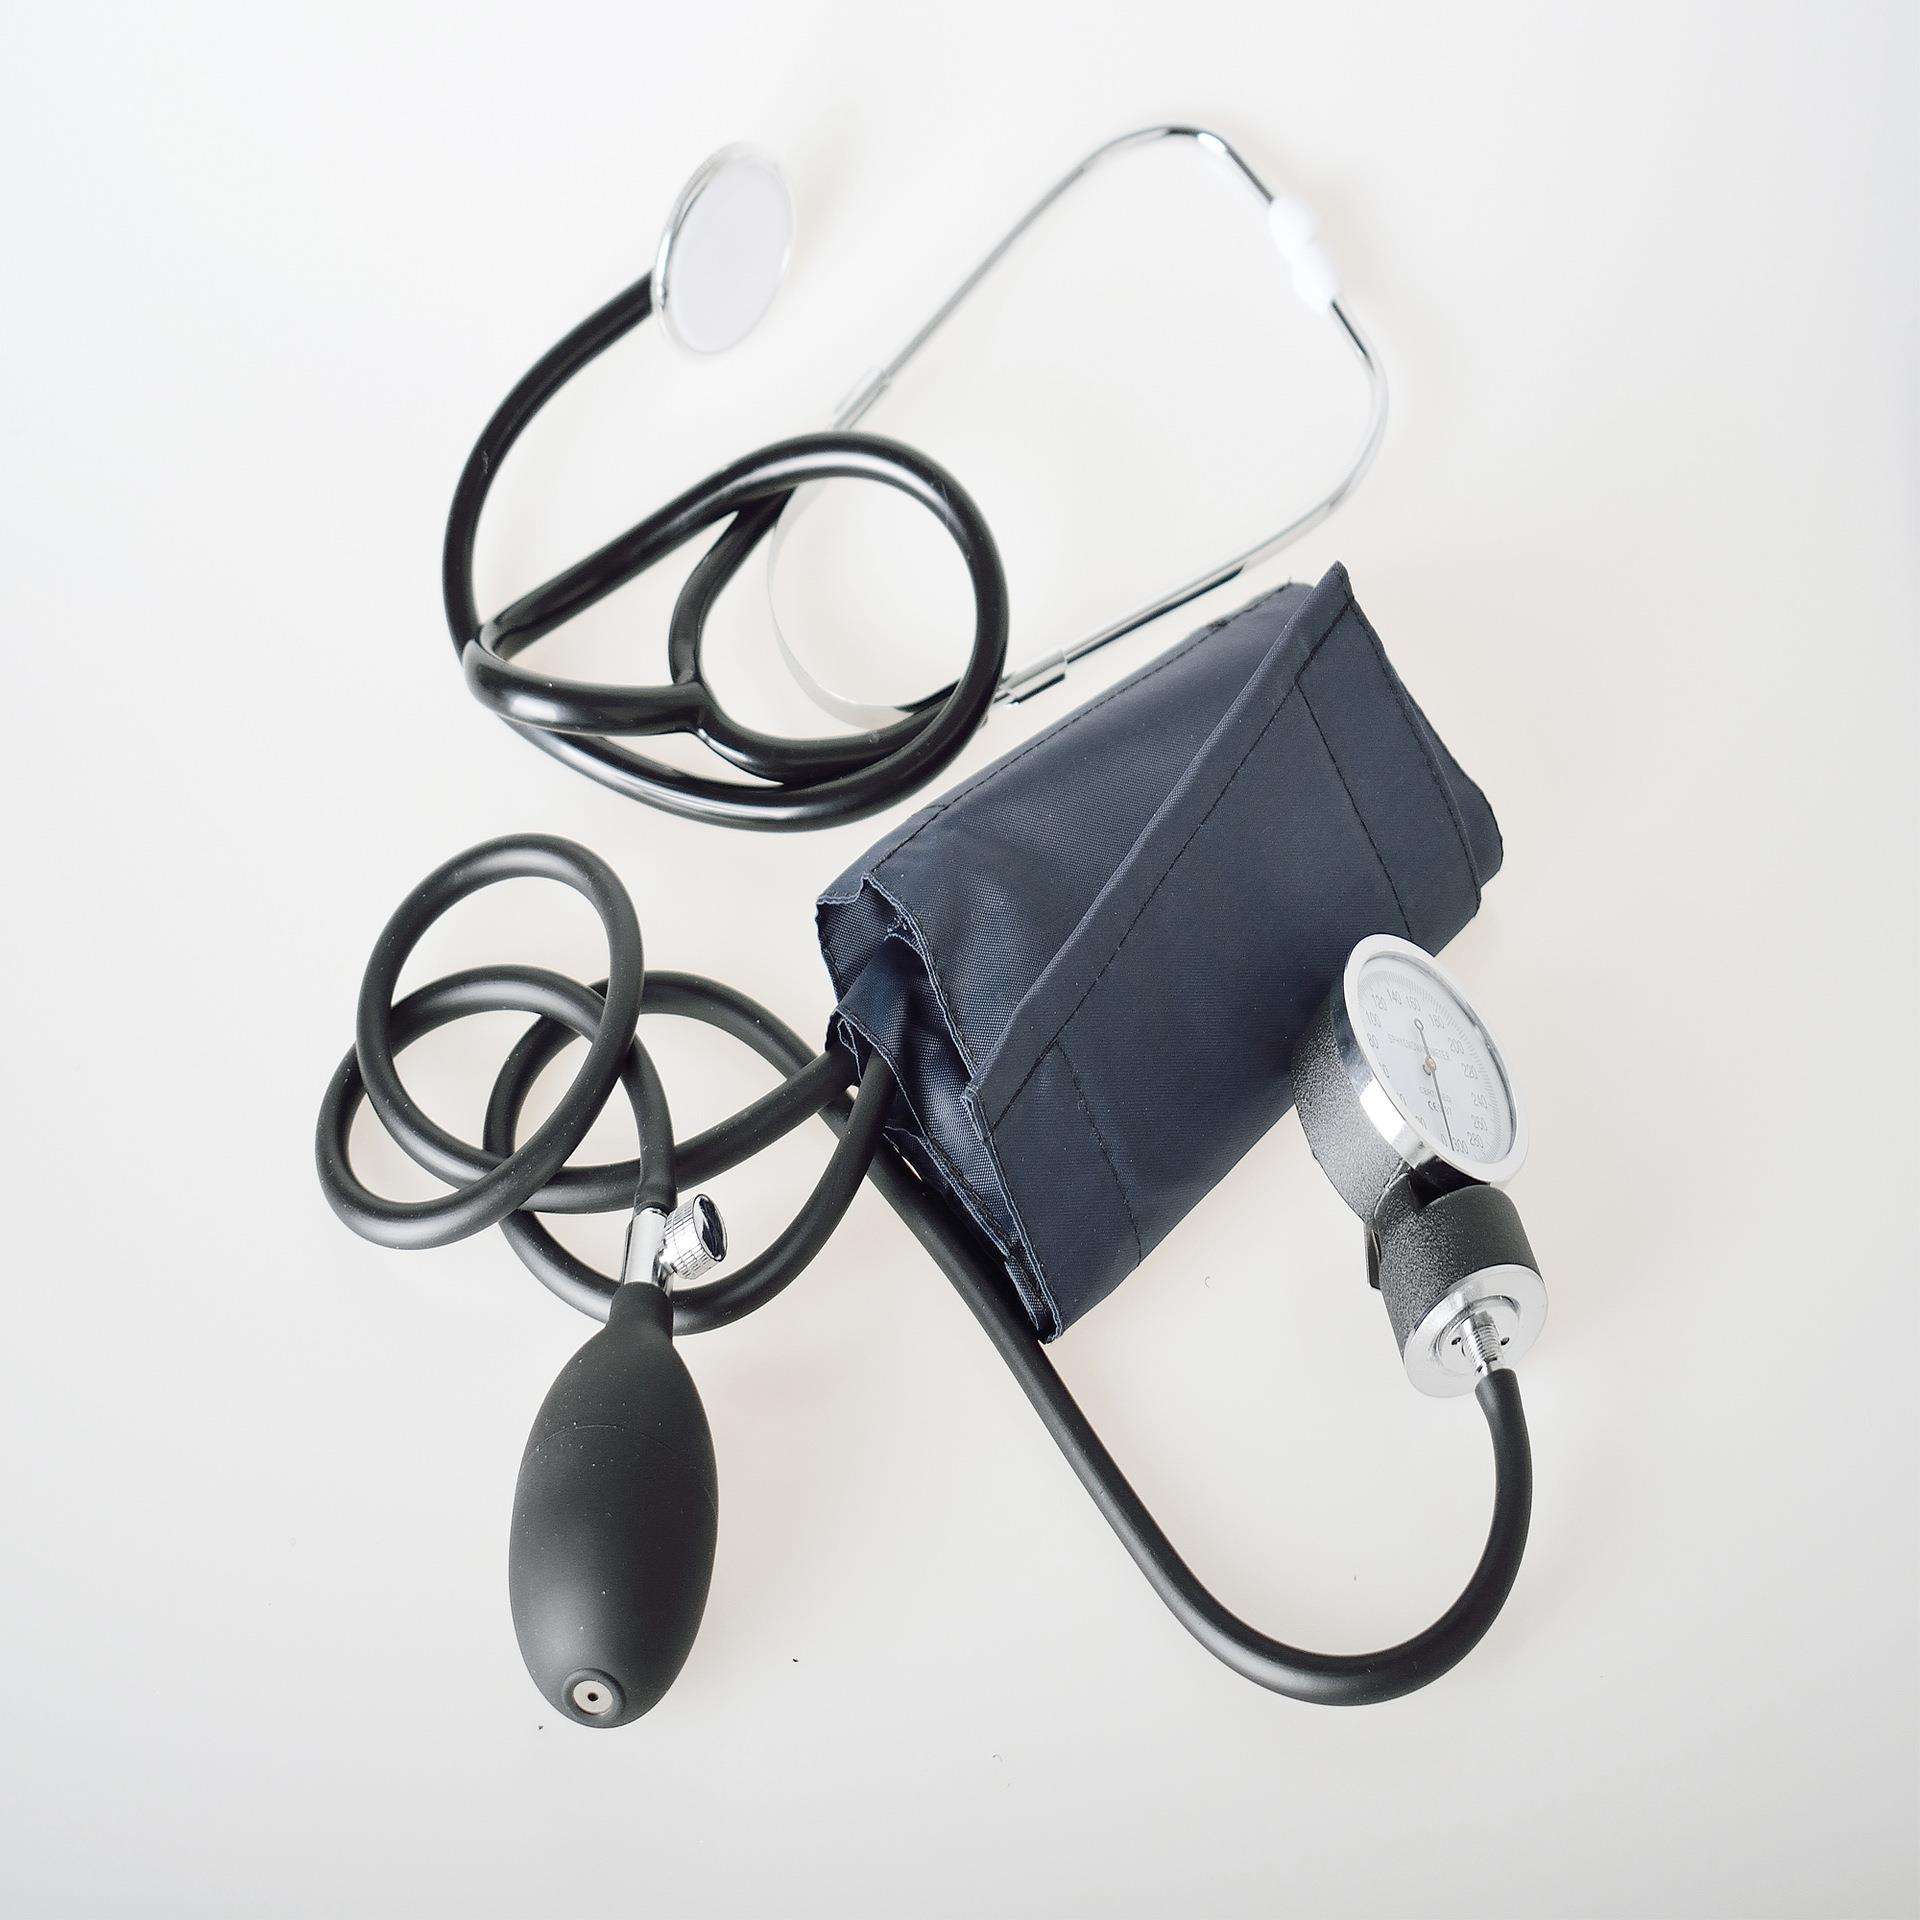 Ručni mjerač krvnog tlaka za medicinsku upotrebu